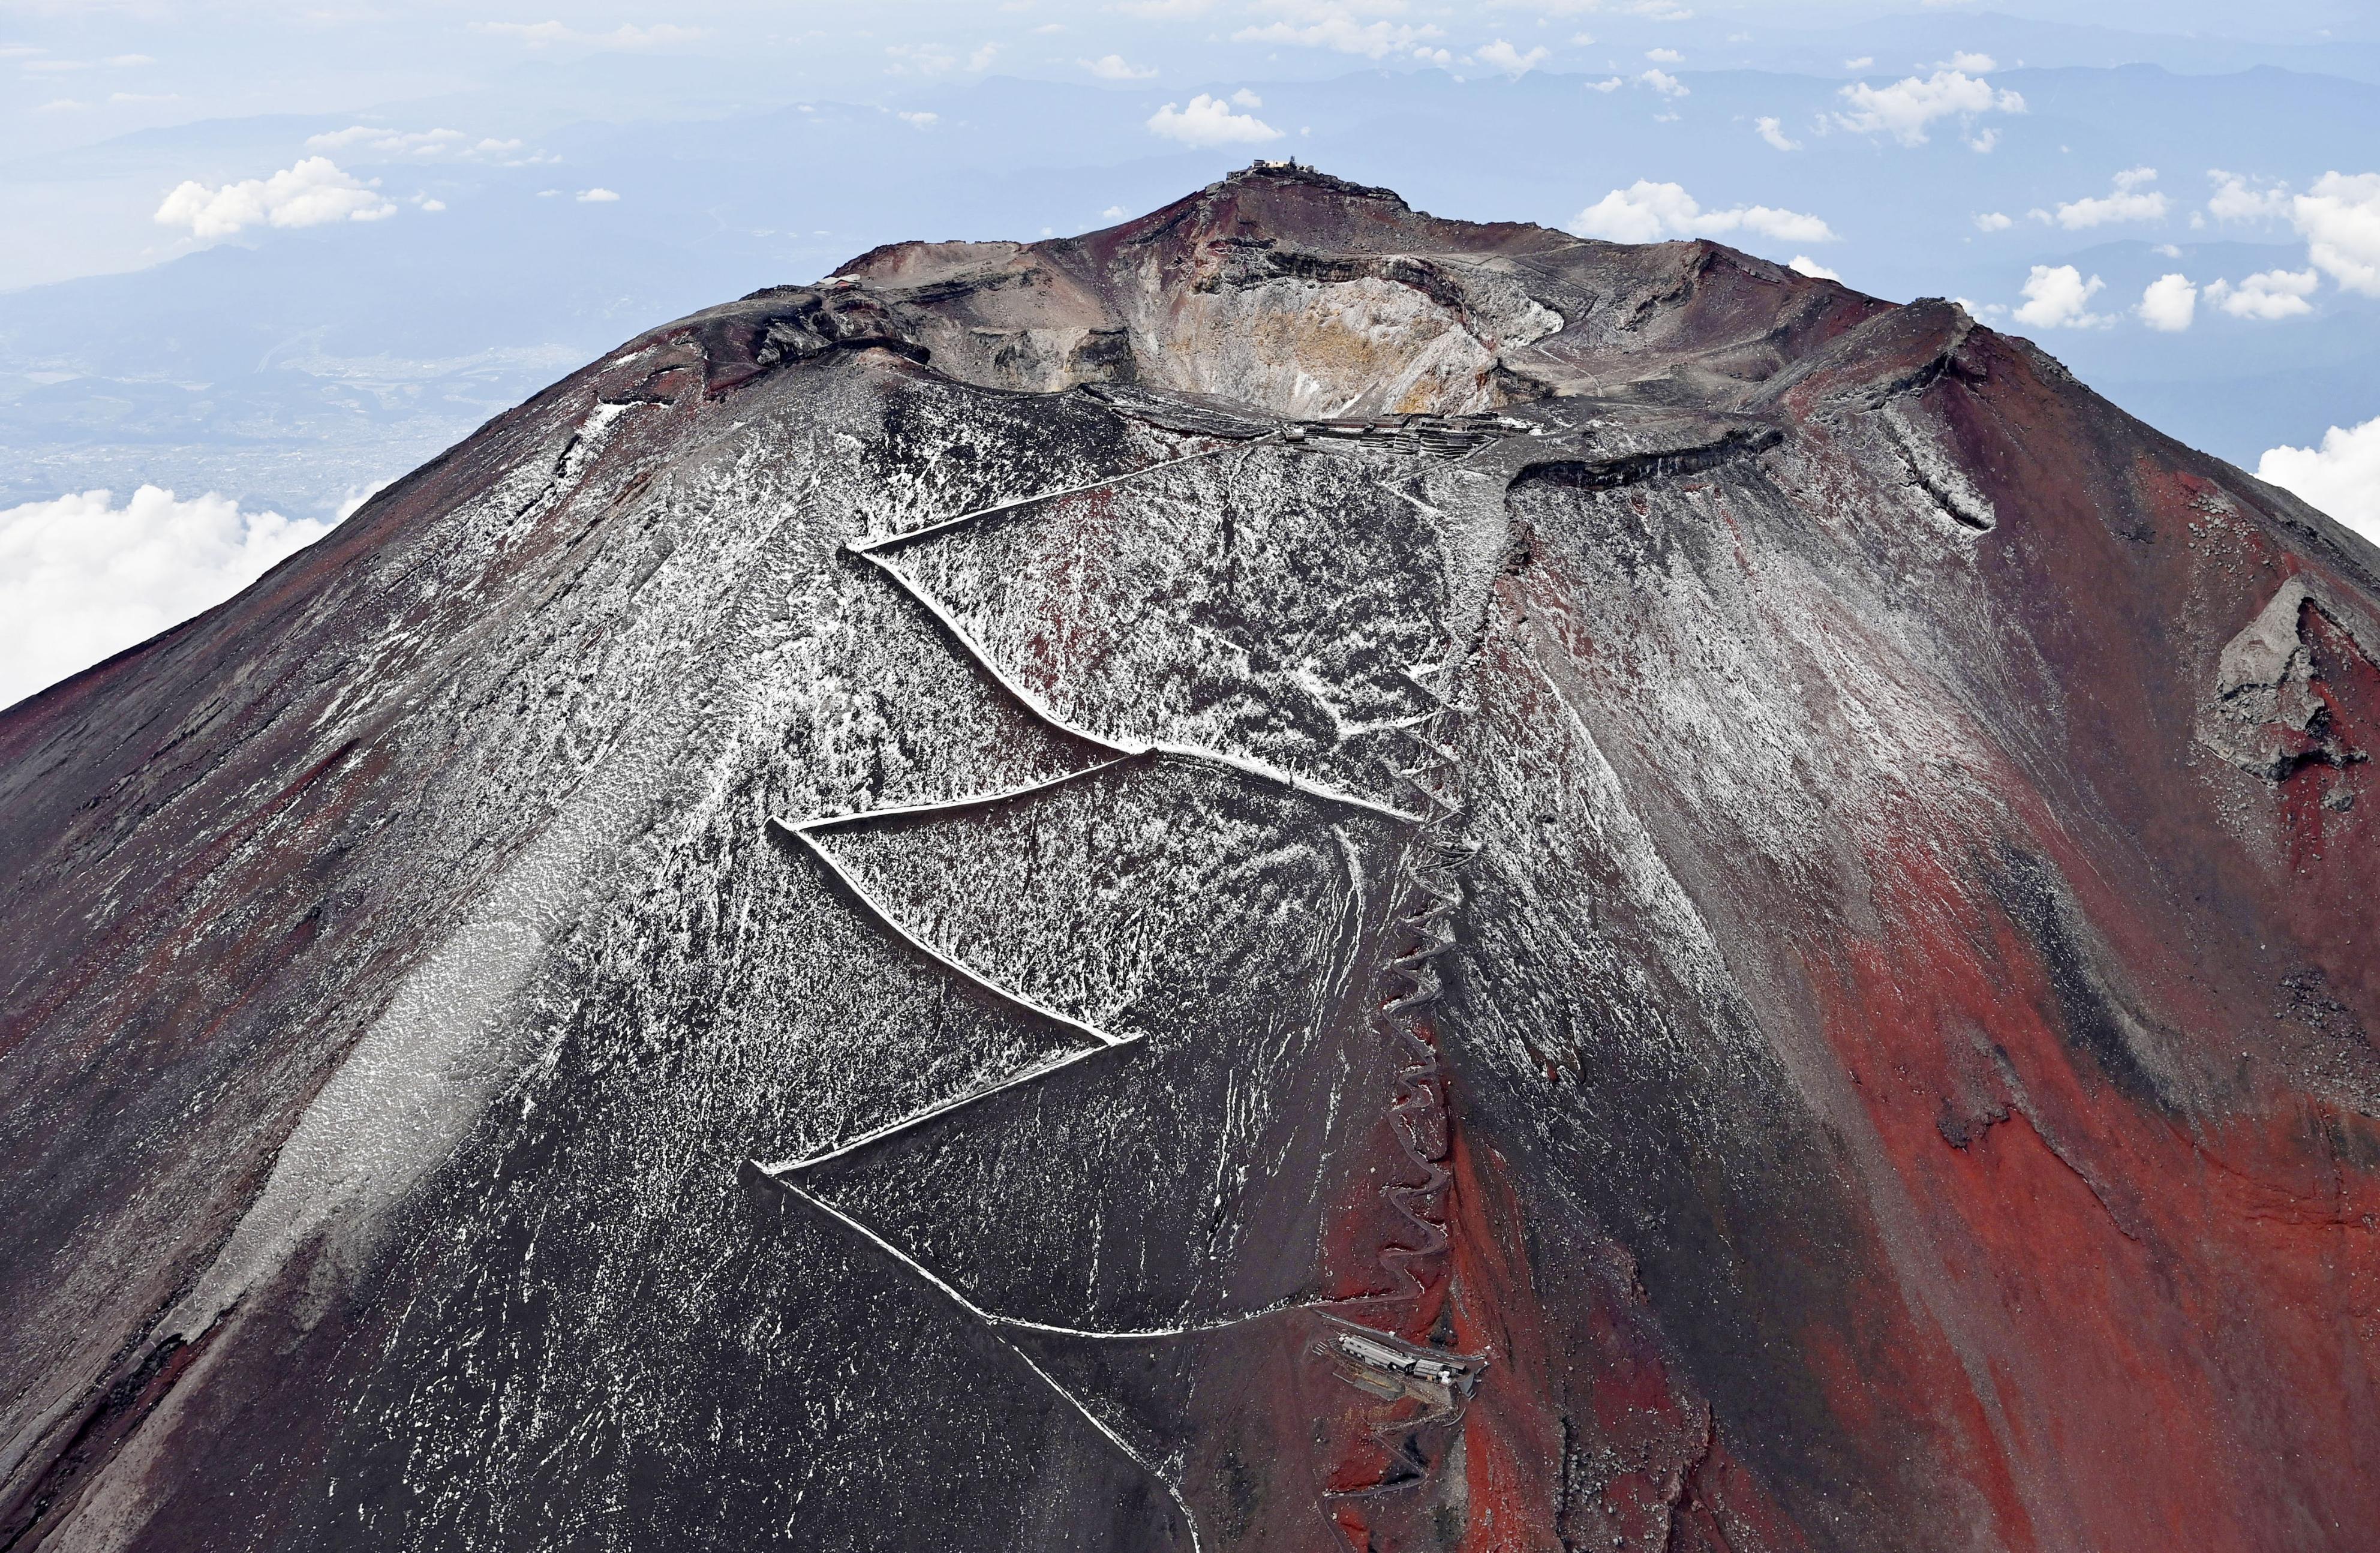 日本富士山喷火口增加近6倍 专家称随时都有喷发可能